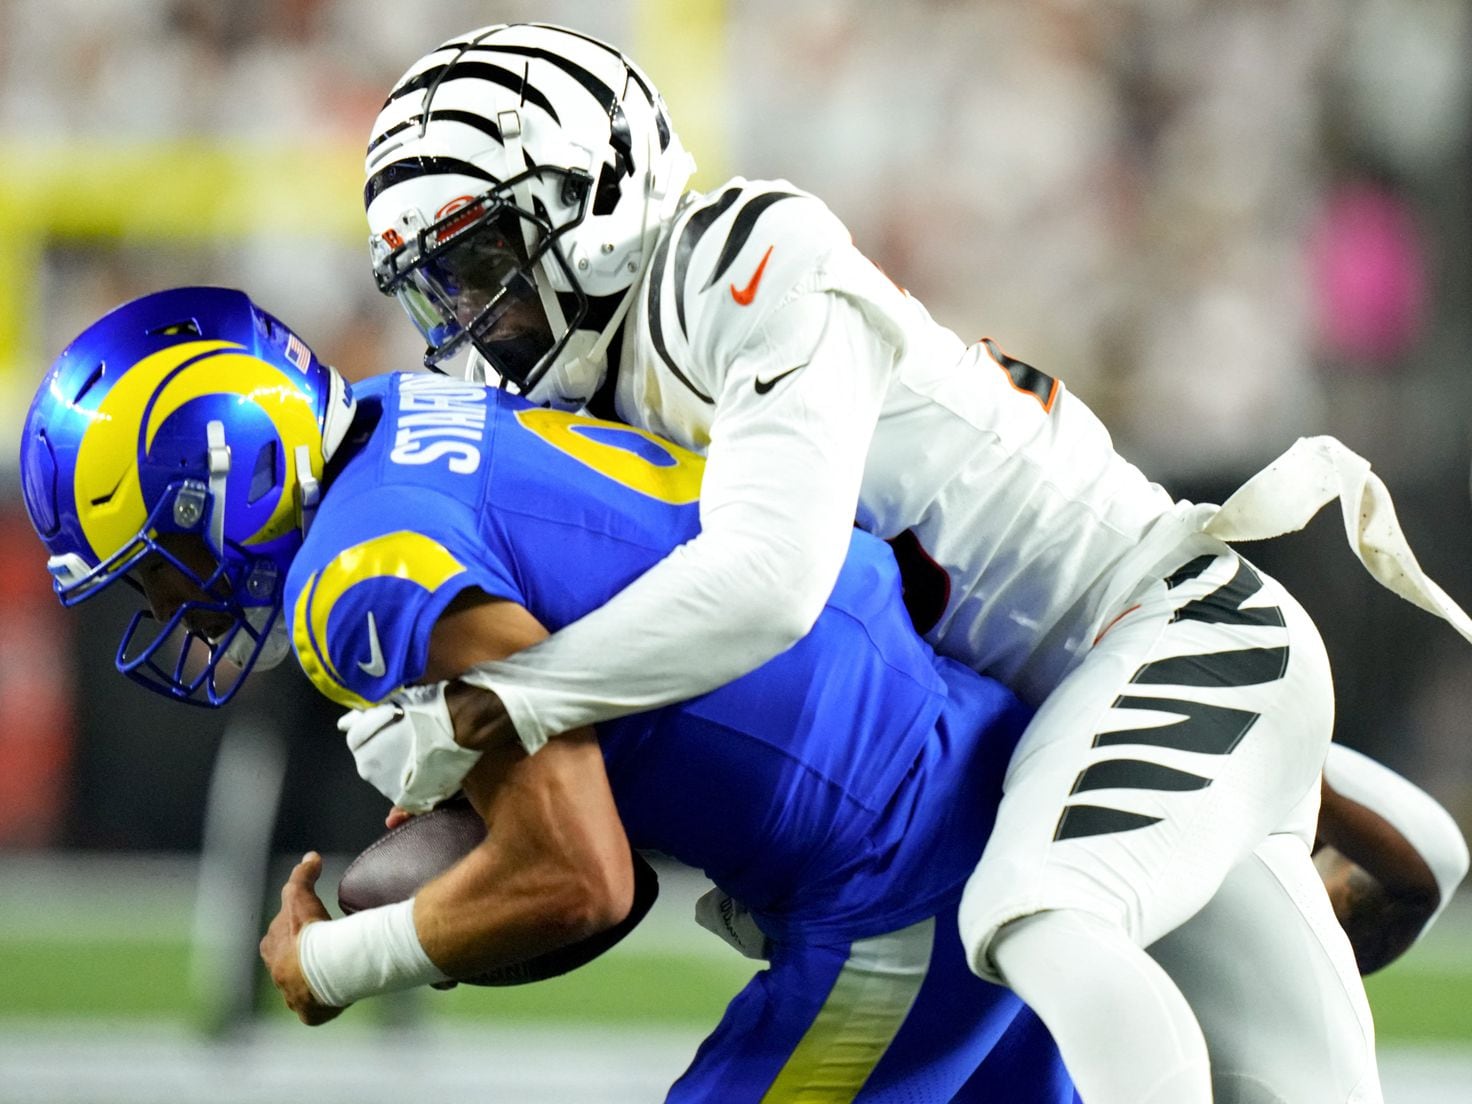 Rams vs. Bengals  Super Bowl LVI Game Highlights 